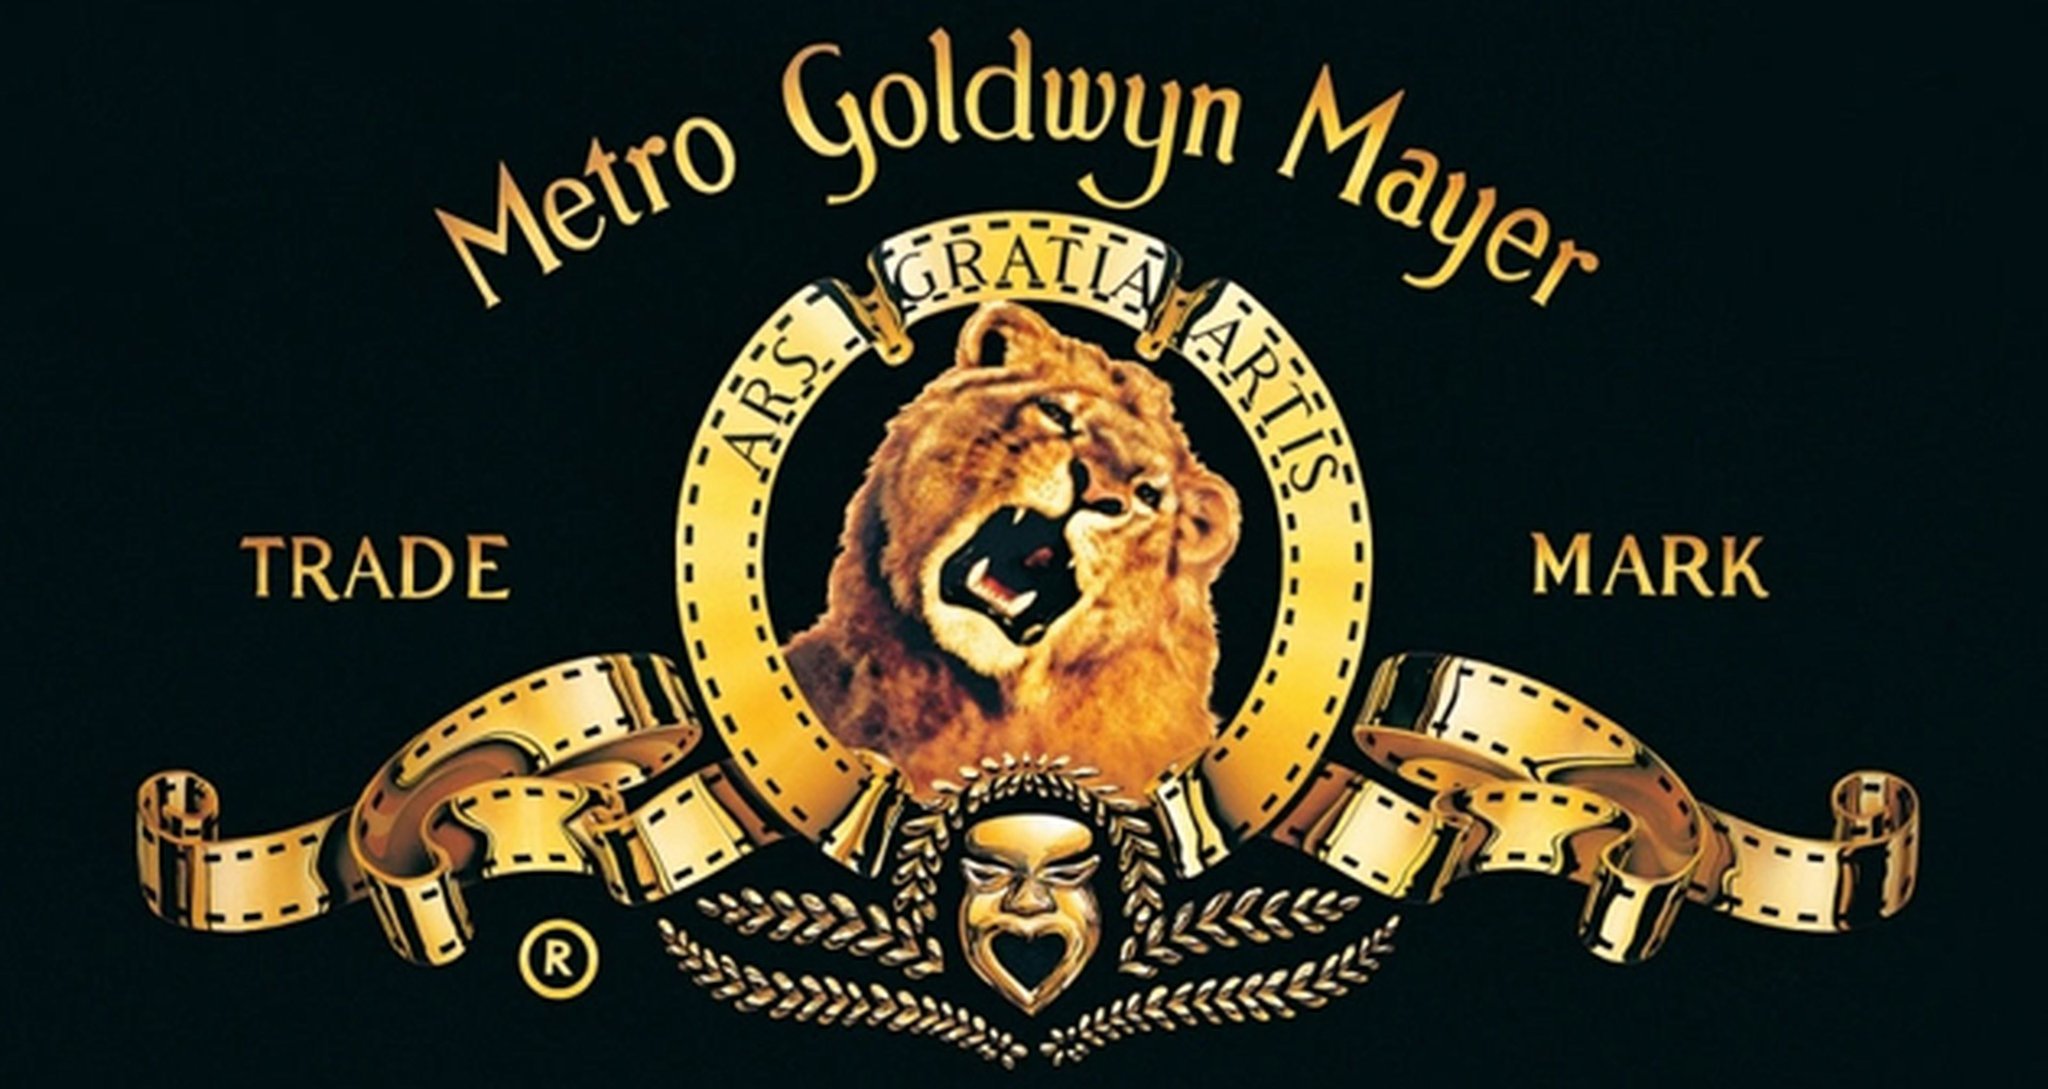 MGM cien años